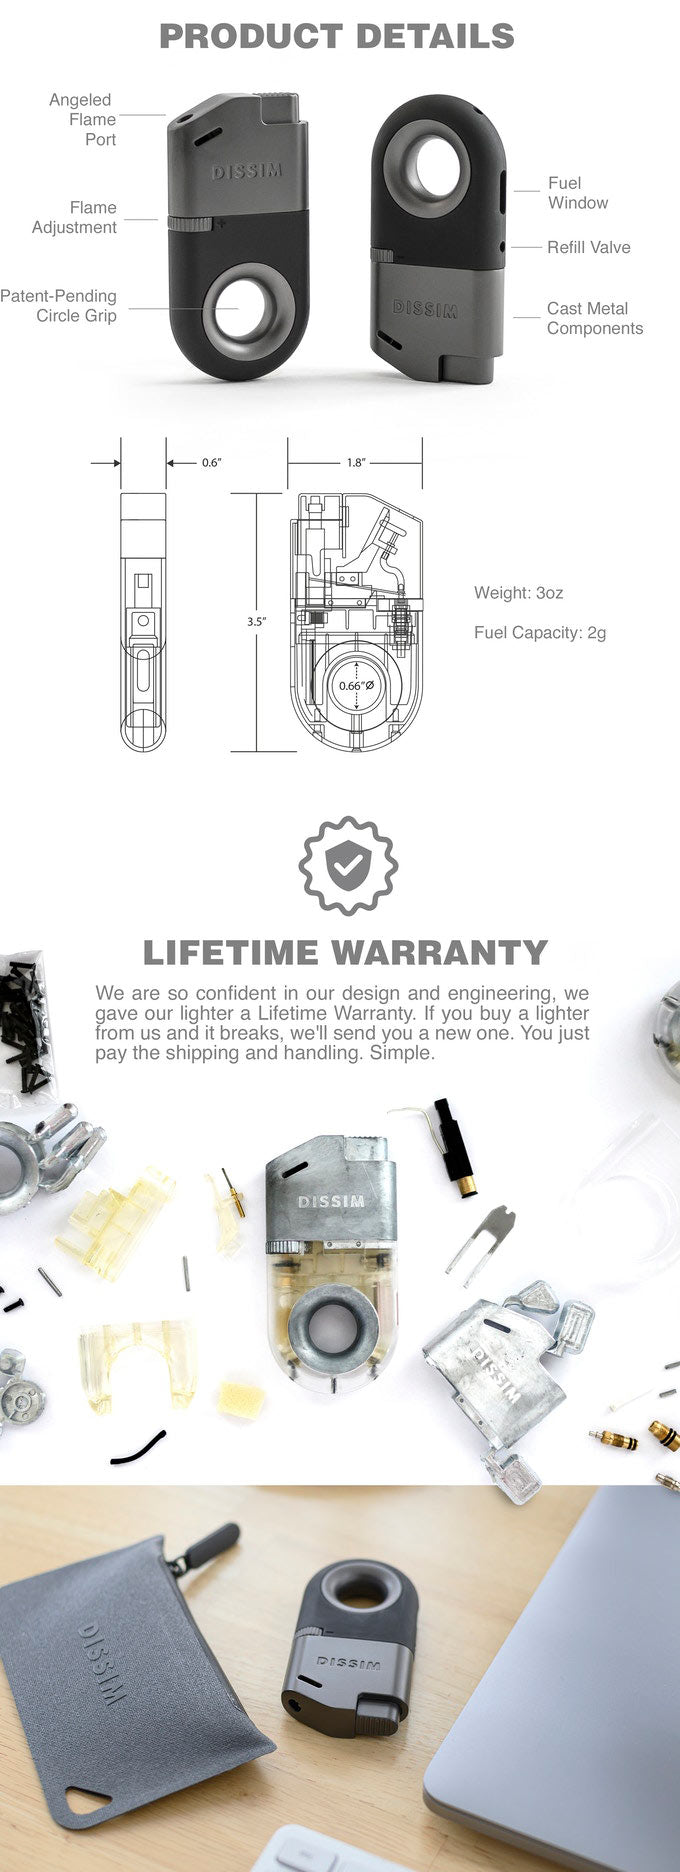 Inverted Lighter Details - Lifetime Warranty